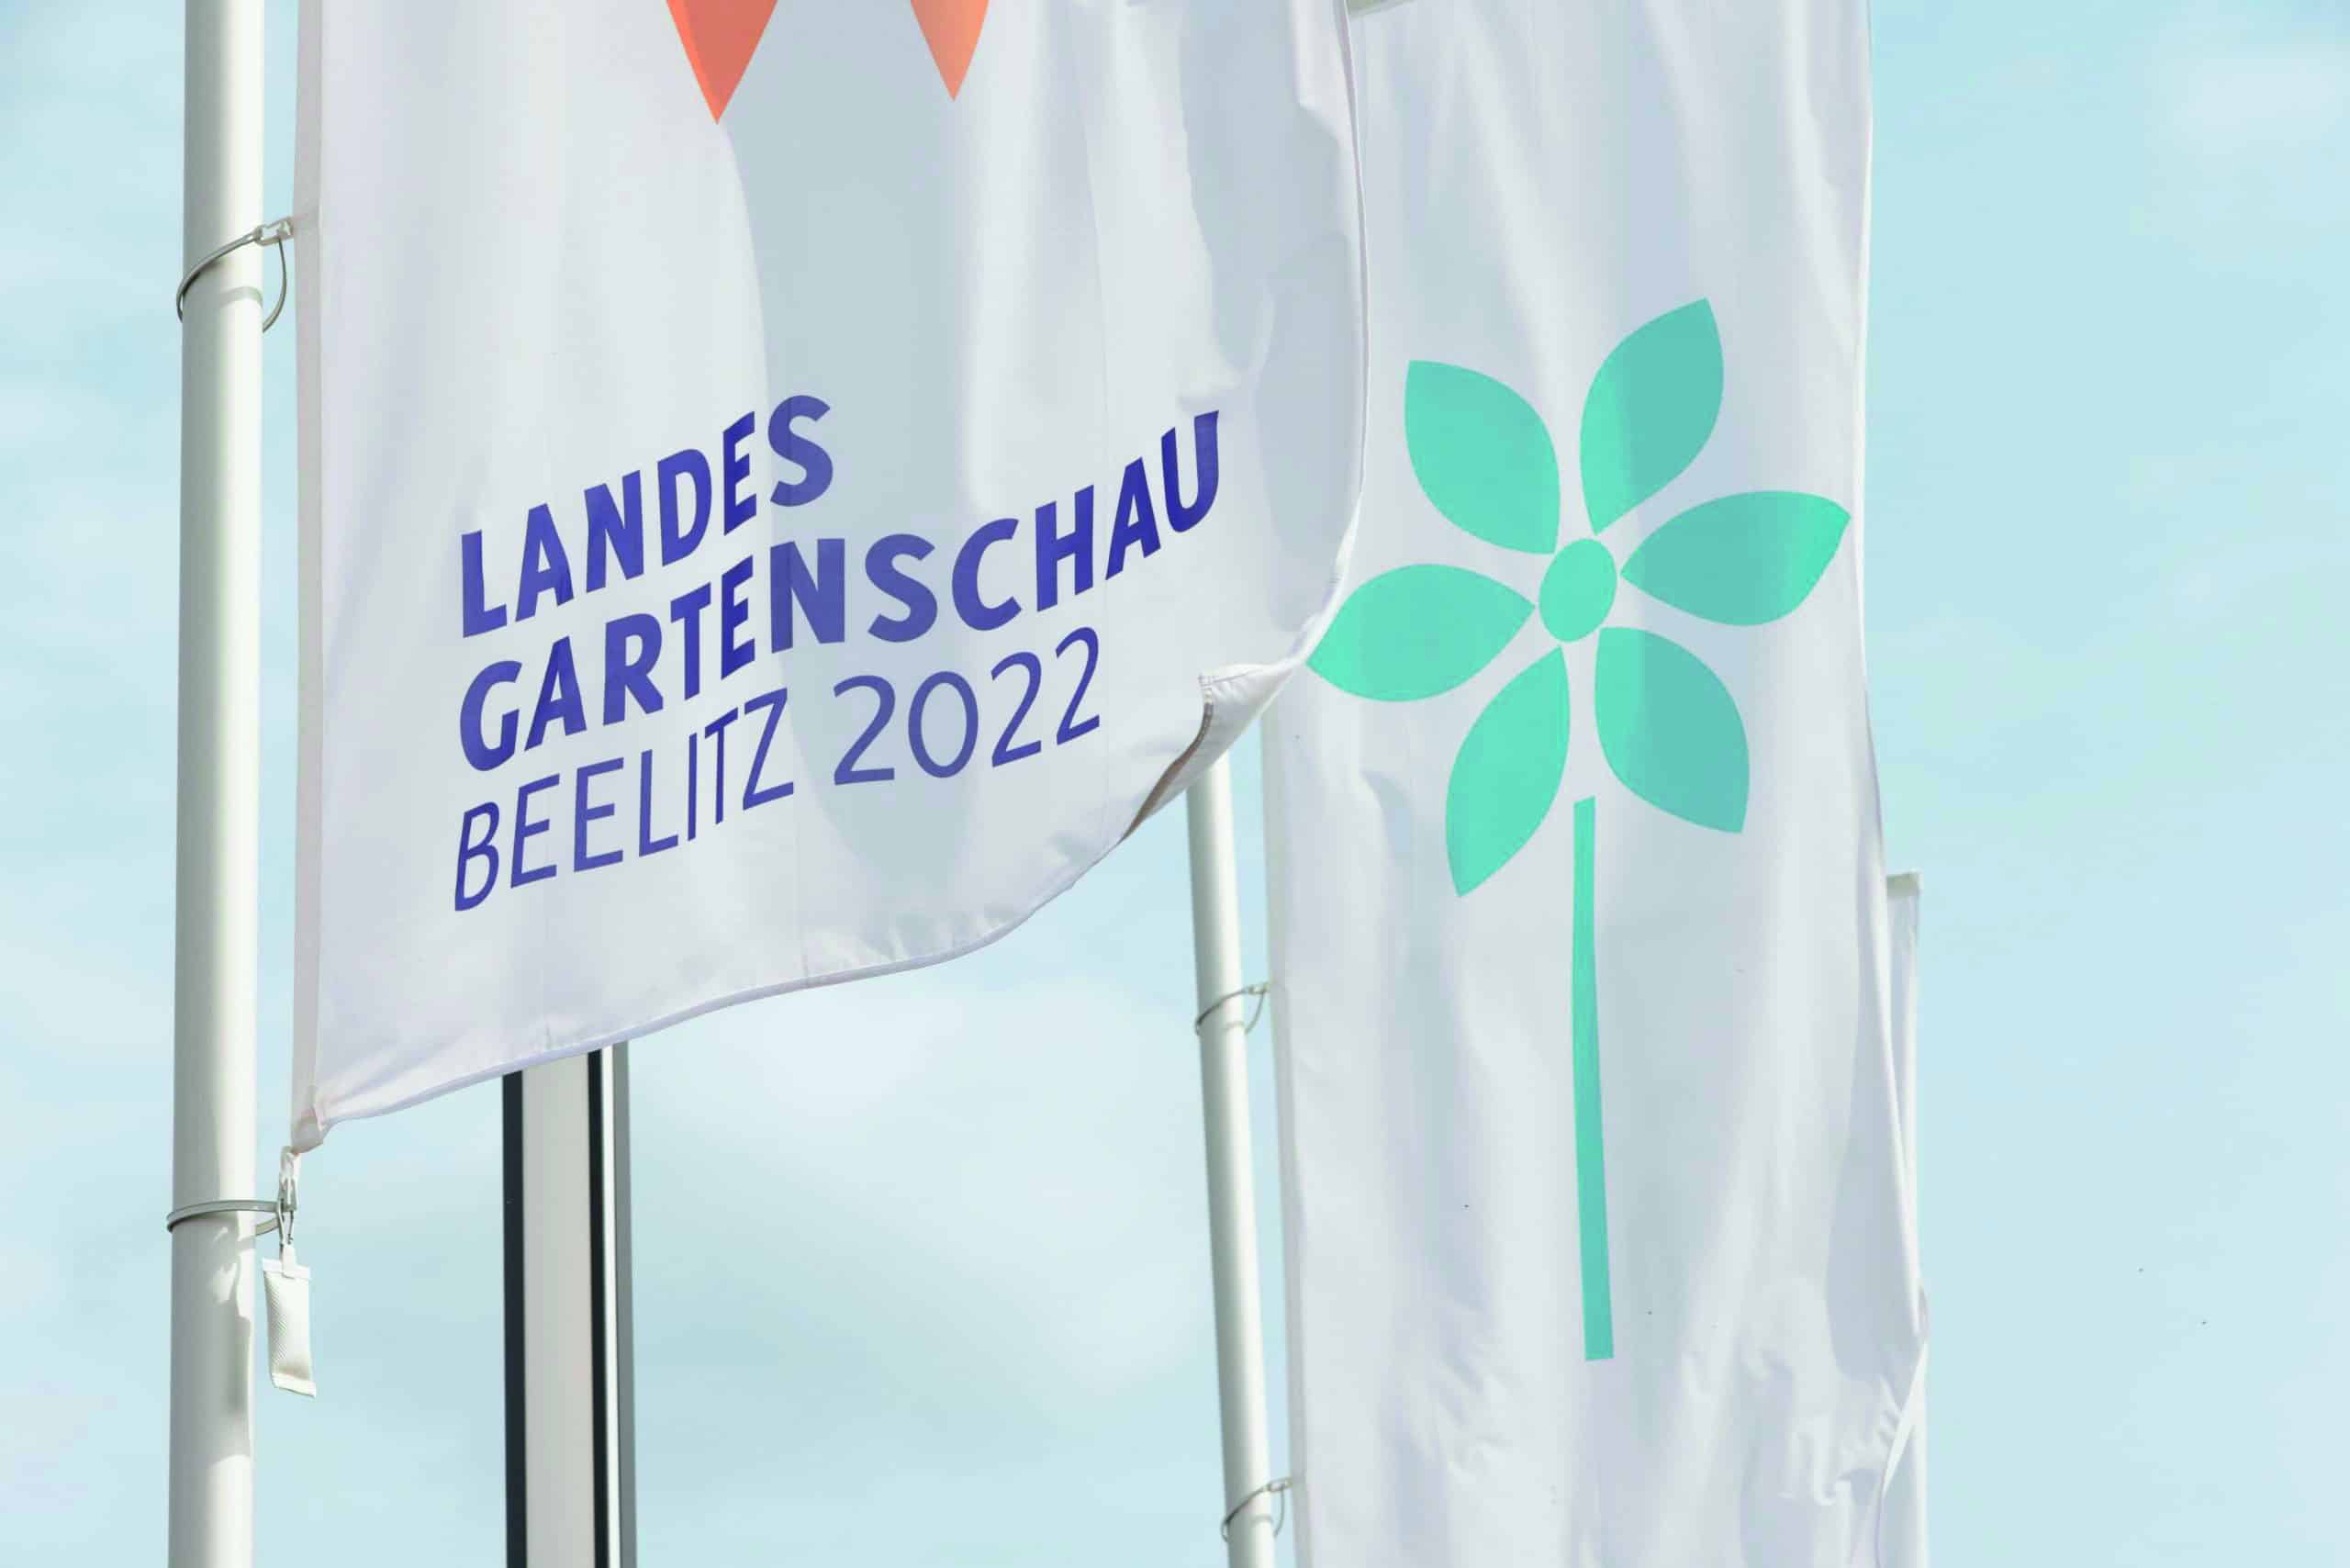 Die Brandenburger Landesgartenschau 2022 findet vom 14. April bis zum 31 Oktober in Beelitz statt. Mit 201 Ausstellungstagen ist sie die längste Landesgartenschau Brandenburgs. Foto: LAGA Beelitz gGmbH